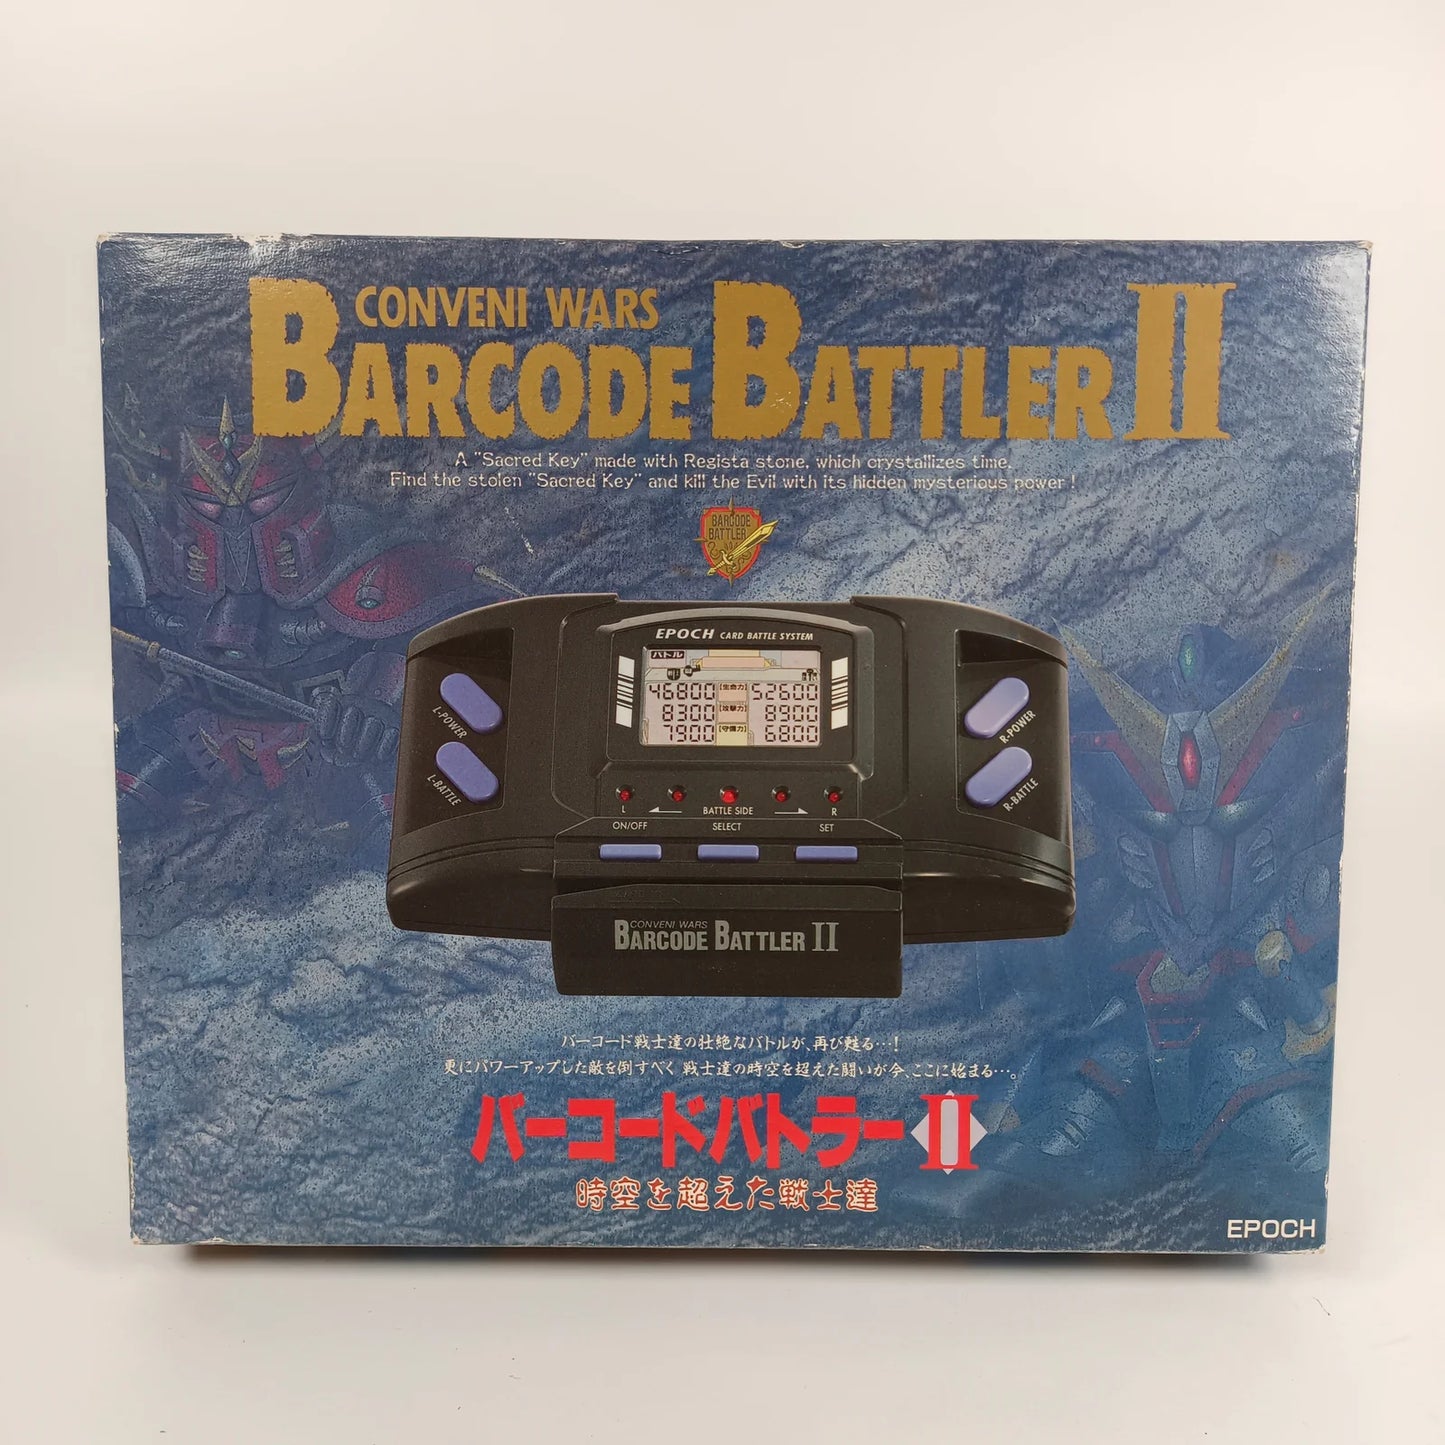 Barcode Battler II